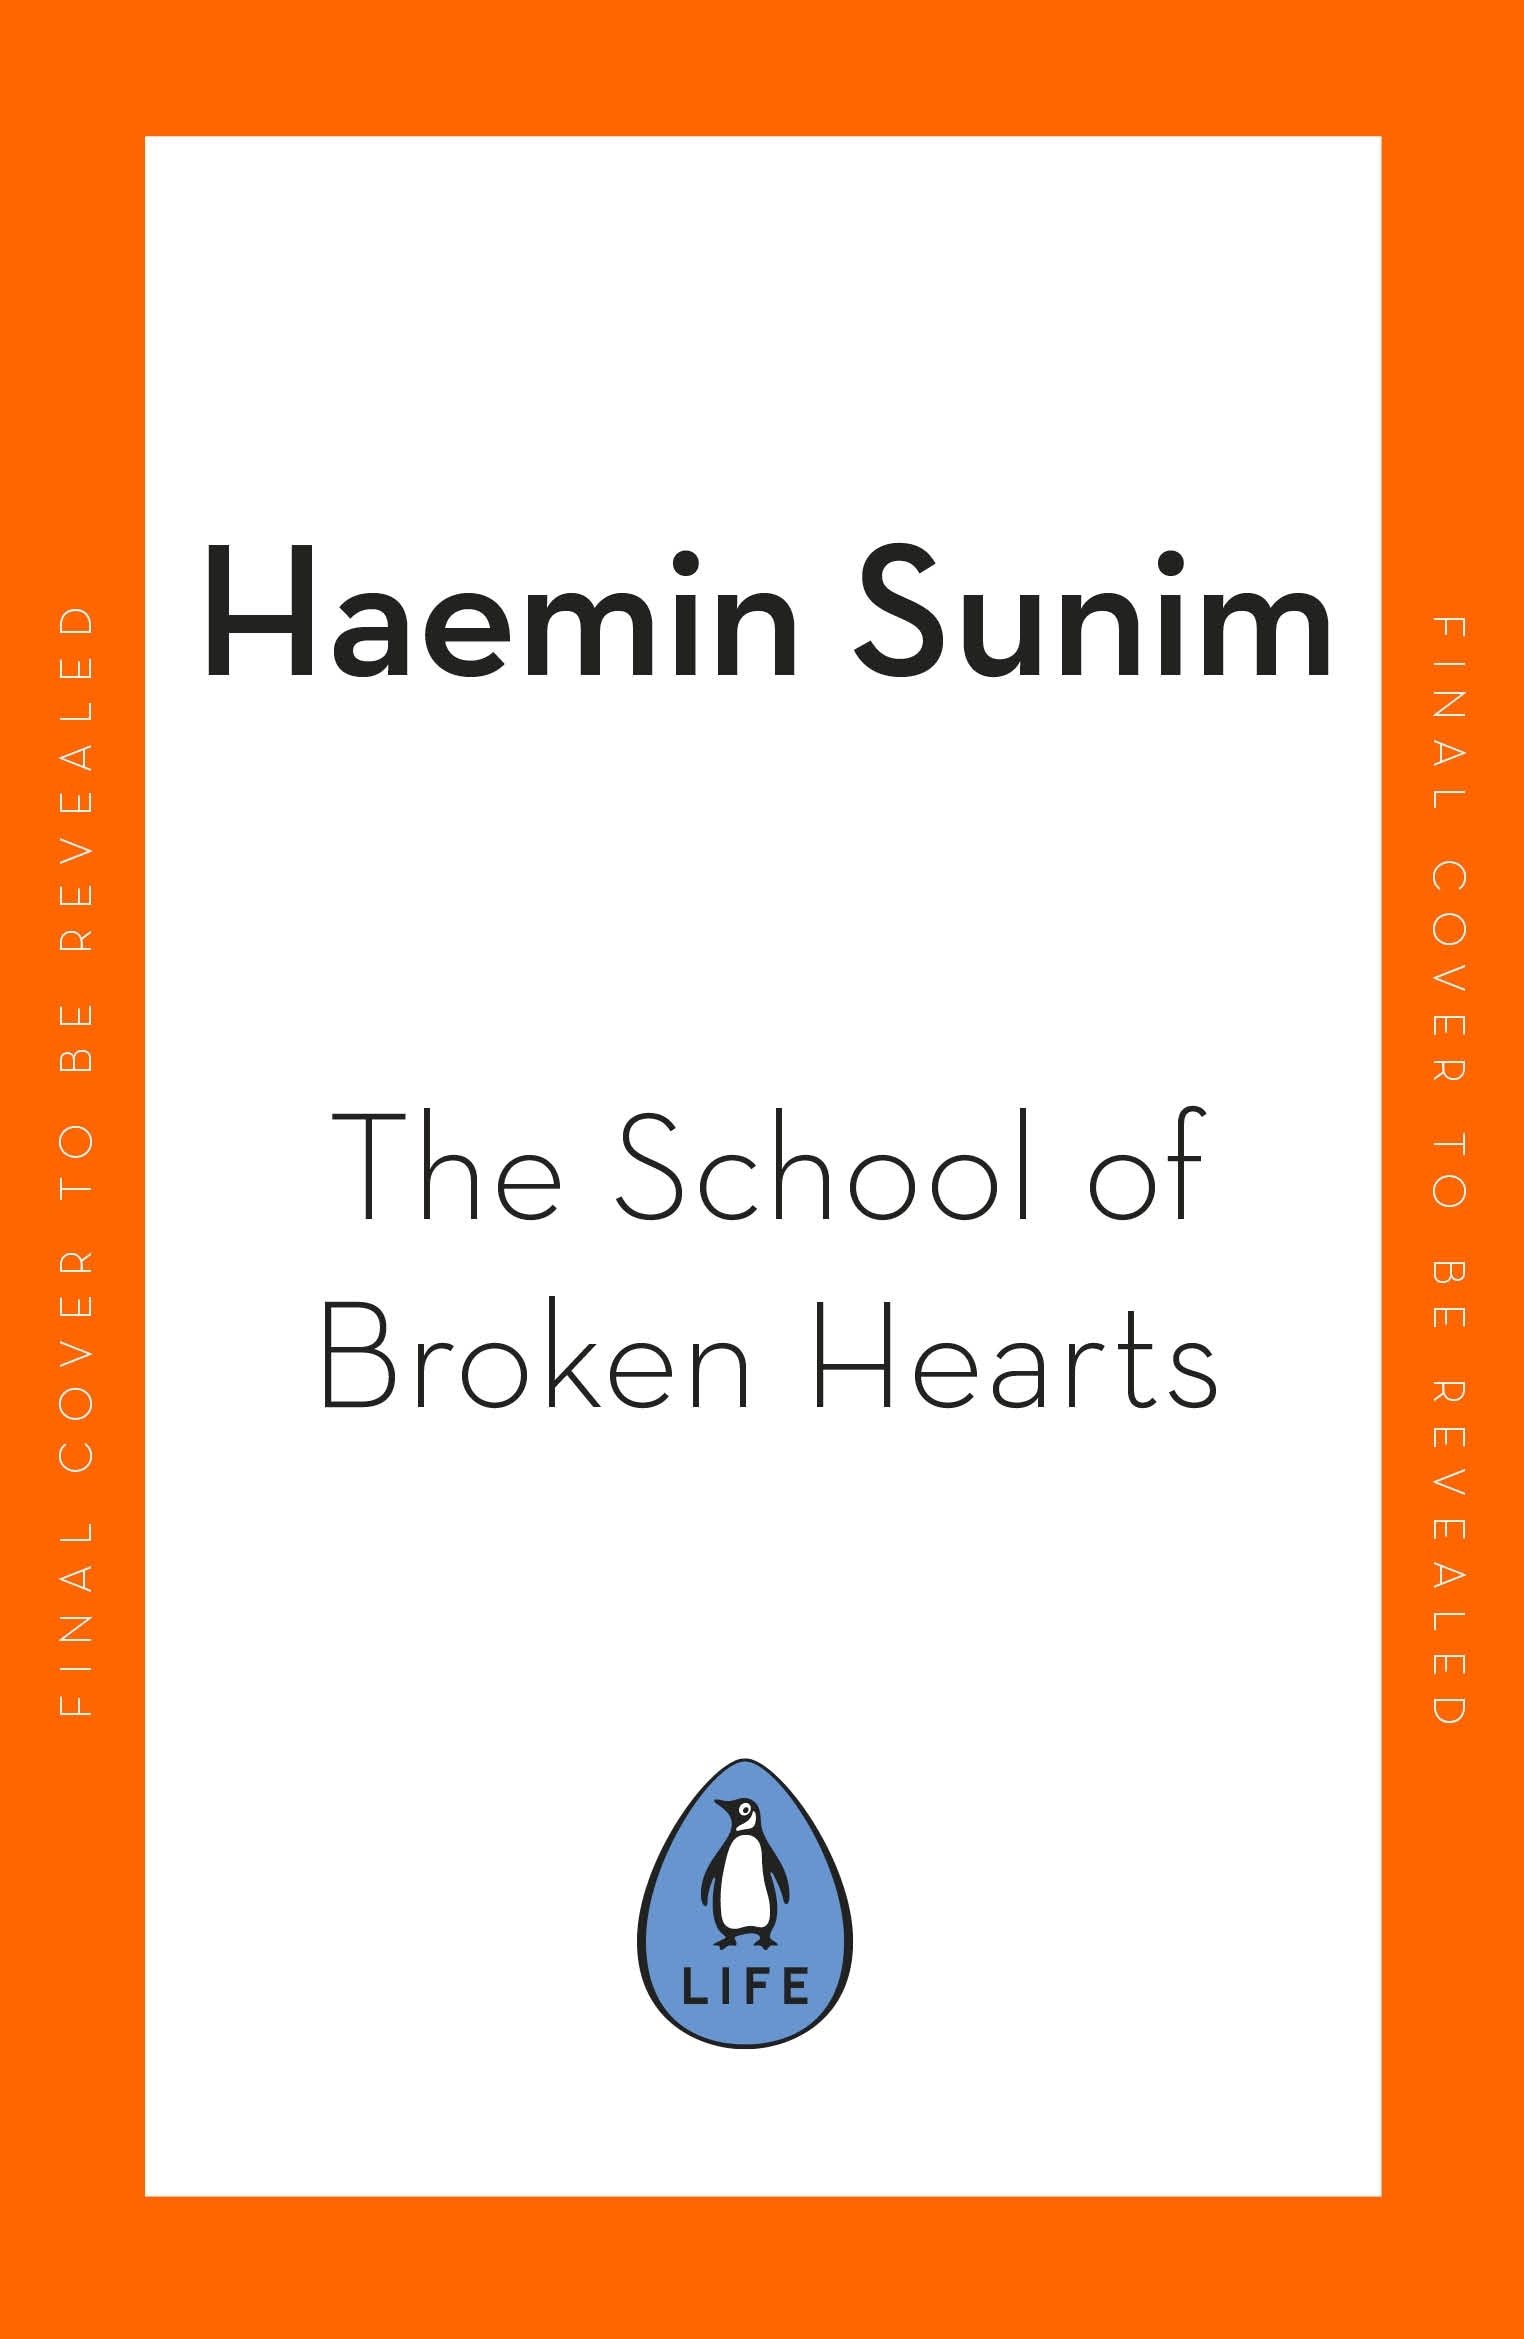 The School for Broken Hearts